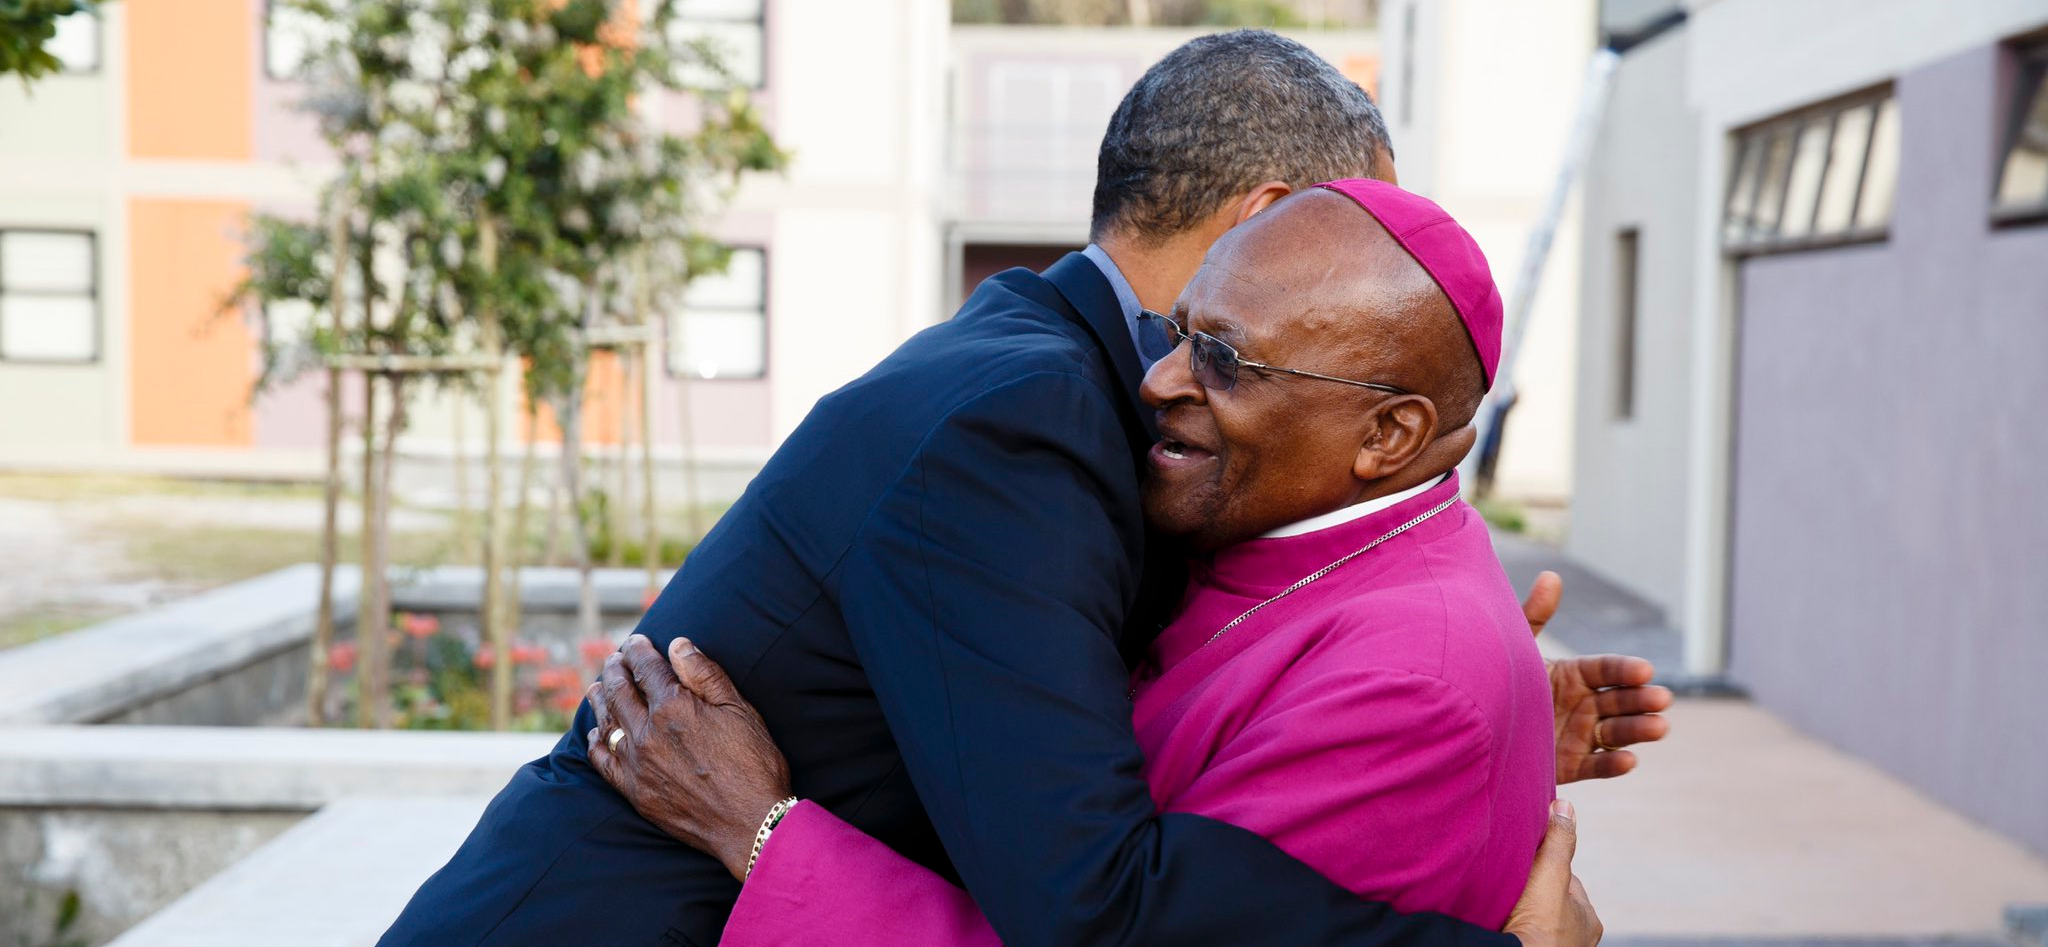 Barack Obama and Desmond Tutu